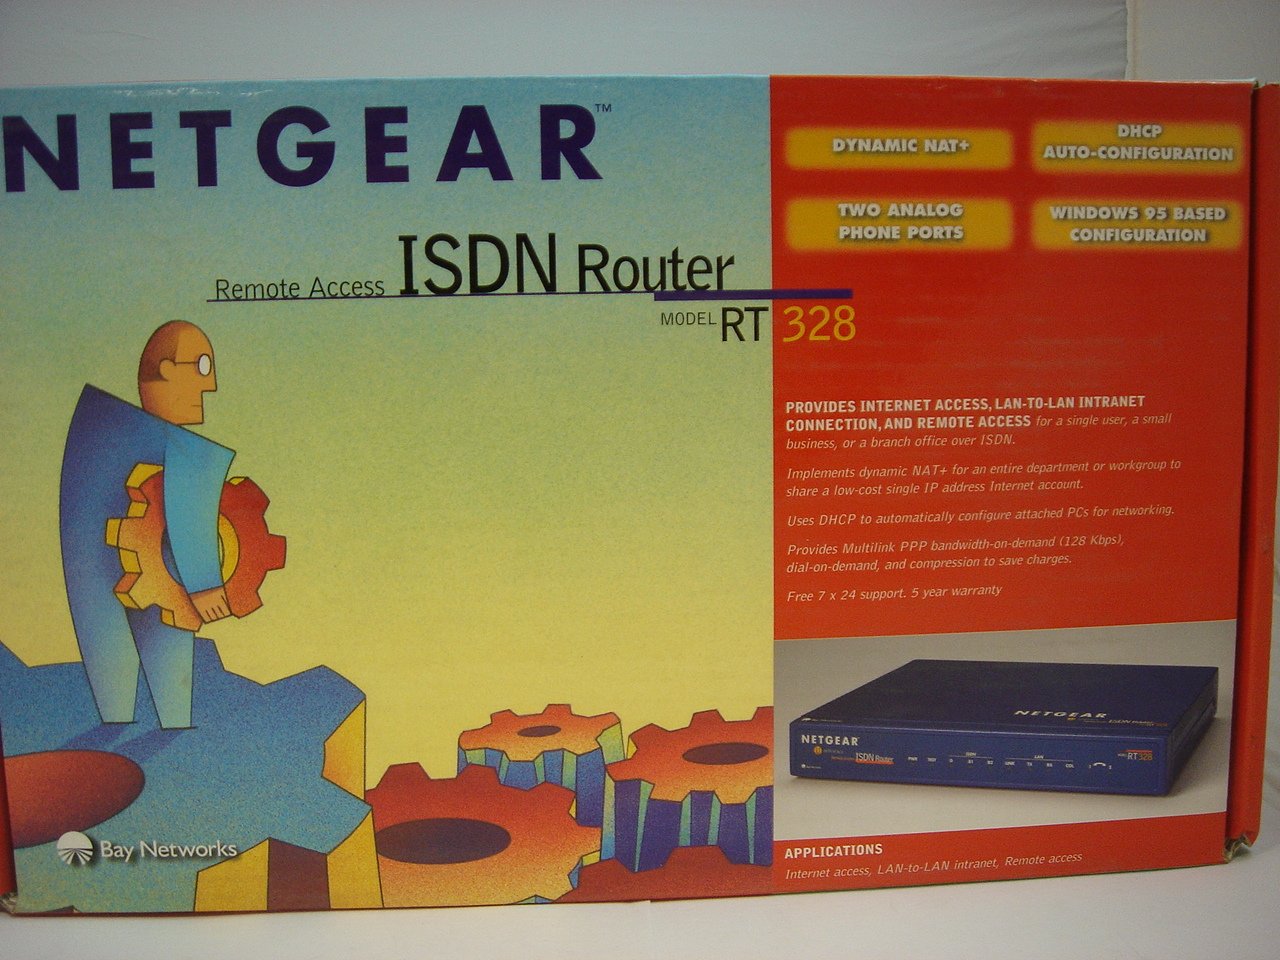 MC5050_RT328_Netgear RT328 ISDN Router - Image7